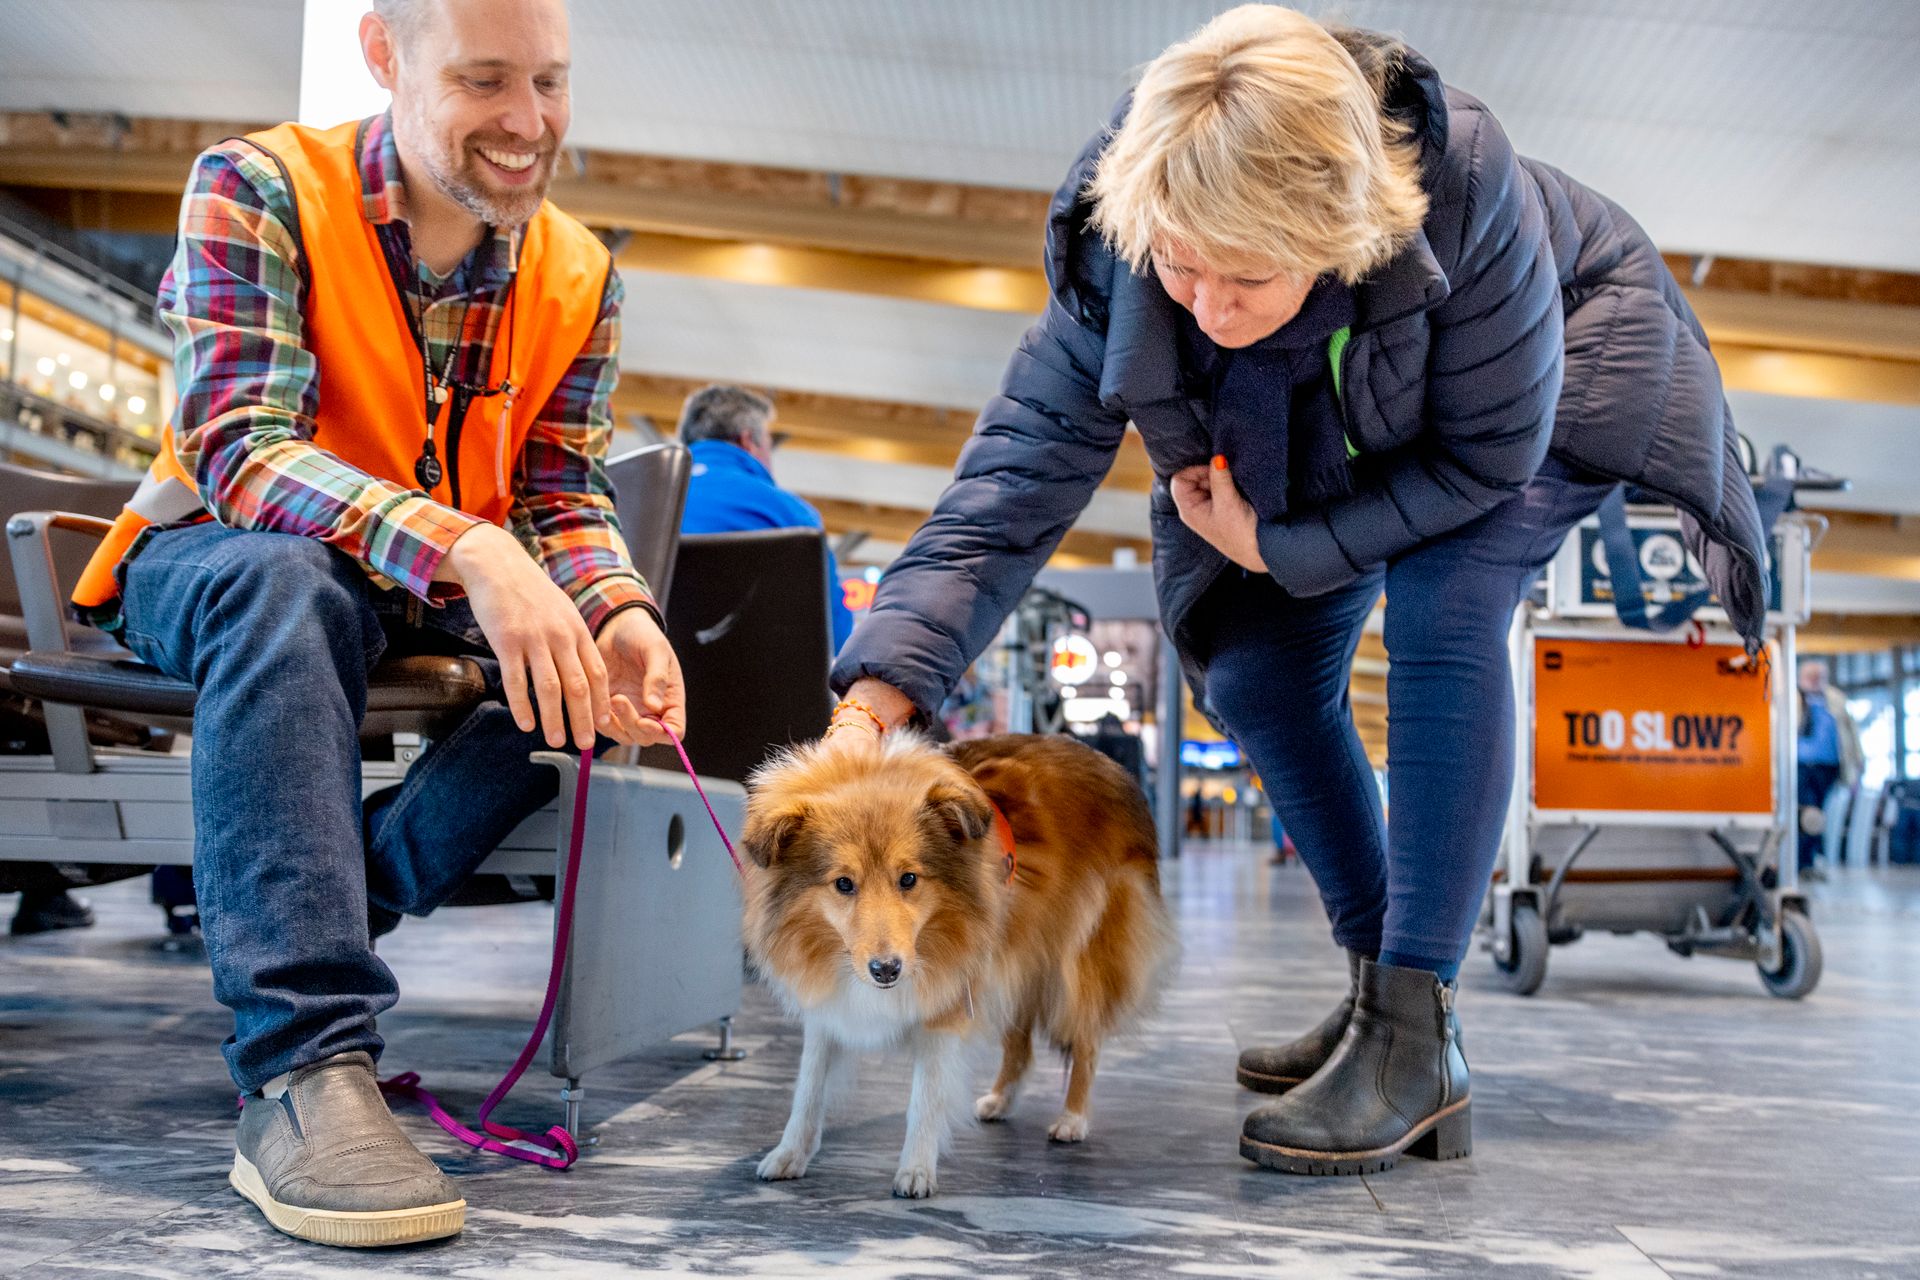 En kvinne bøyer seg ned og klapper en hund på en flyplass, mens en mann holder hunden i bånd og smiler